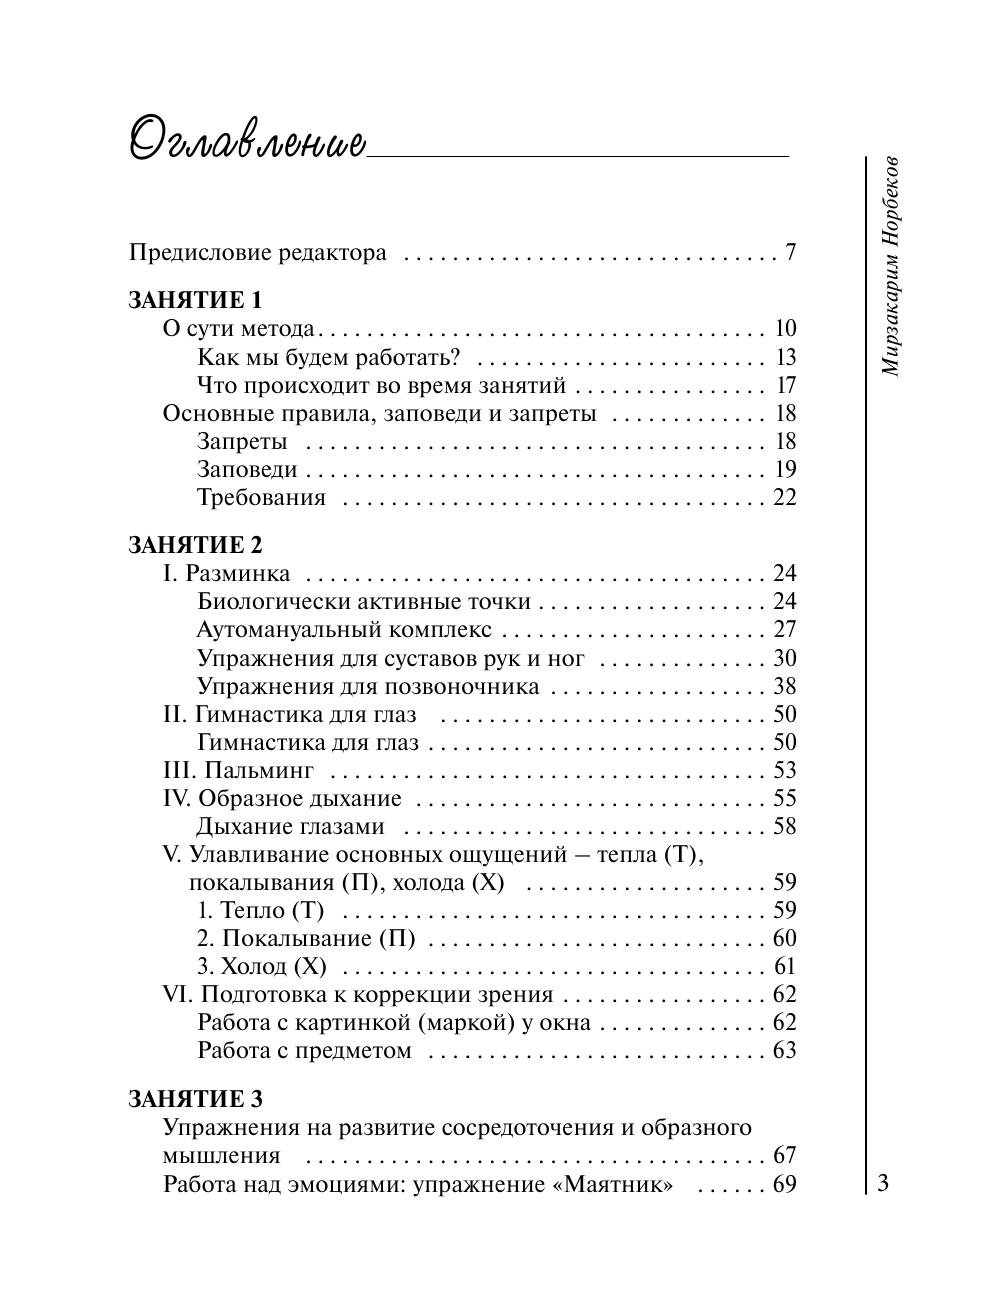 Норбеков Мирзакарим Санакулович Главные правила здоровой жизни - страница 4